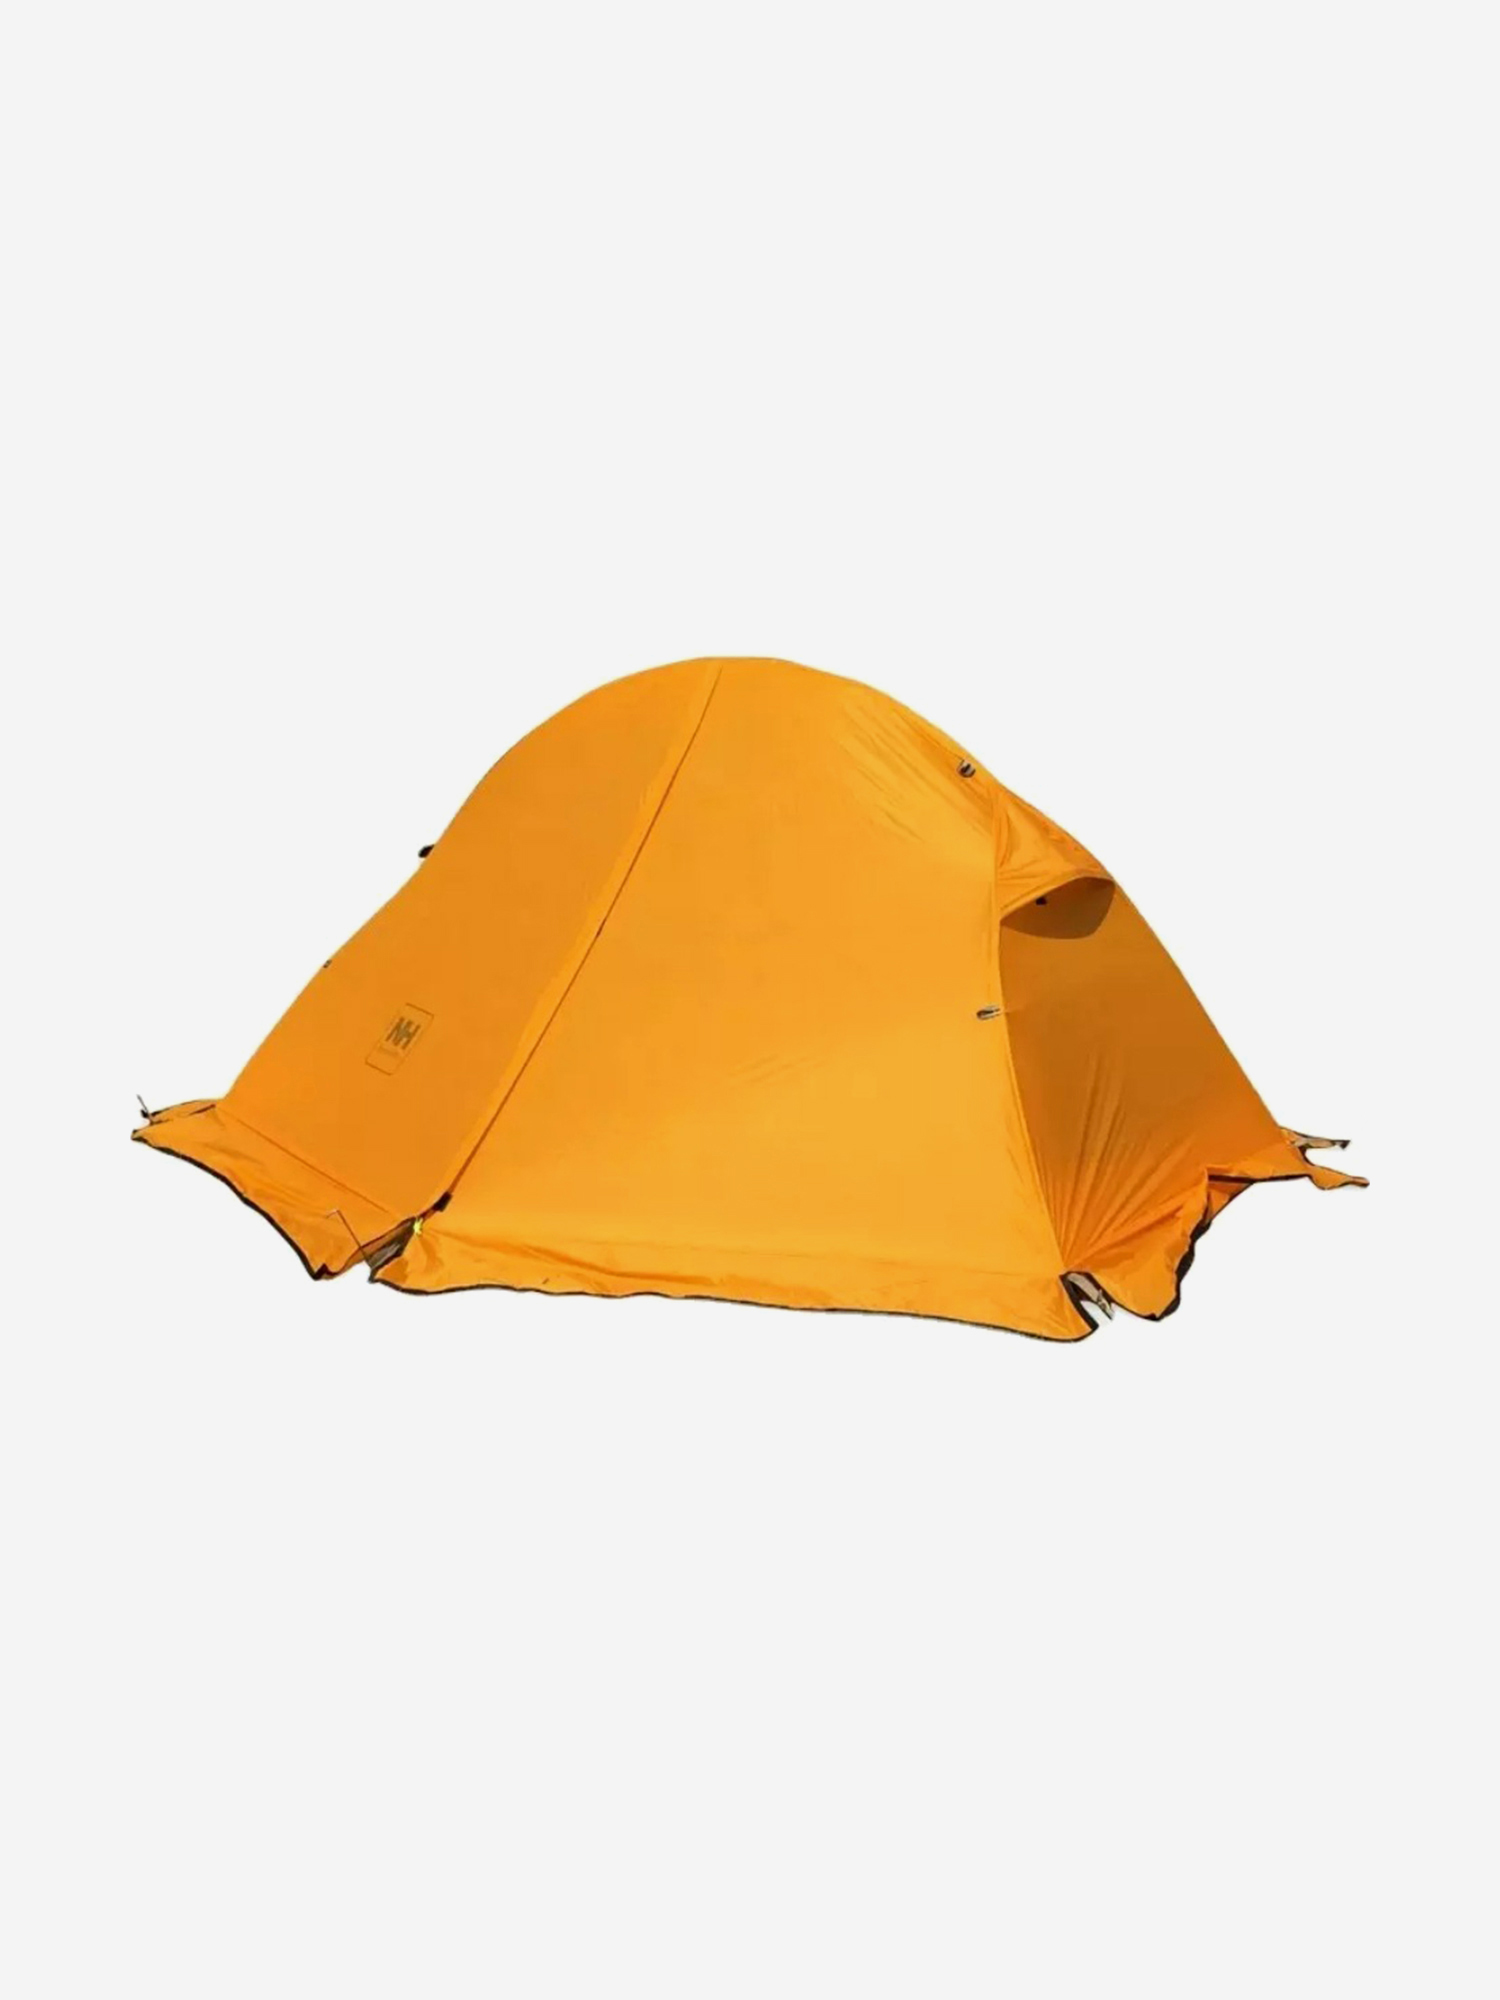 Палатка Naturehike Cycling Si 1-местная, алюминиевый каркас, сверхлегкая, снежная юбка, оранжевый, Оранжевый палатка naturehike star river si 2 местная алюминиевый каркас сверхлегкая оранжевая оранжевый